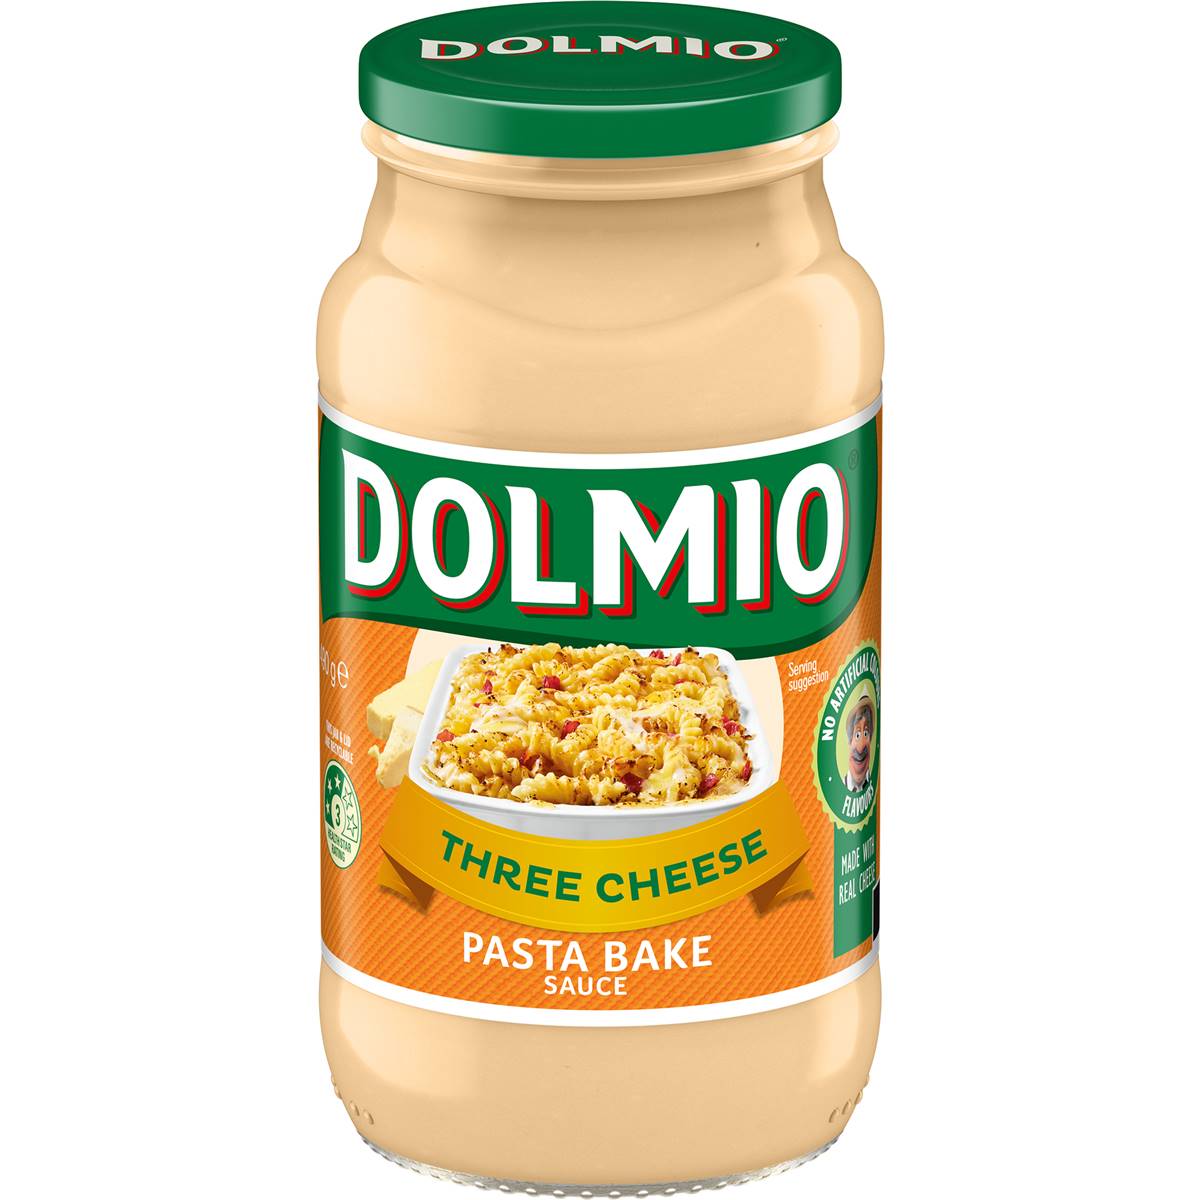 Dolmio Pasta Bake Three Cheese